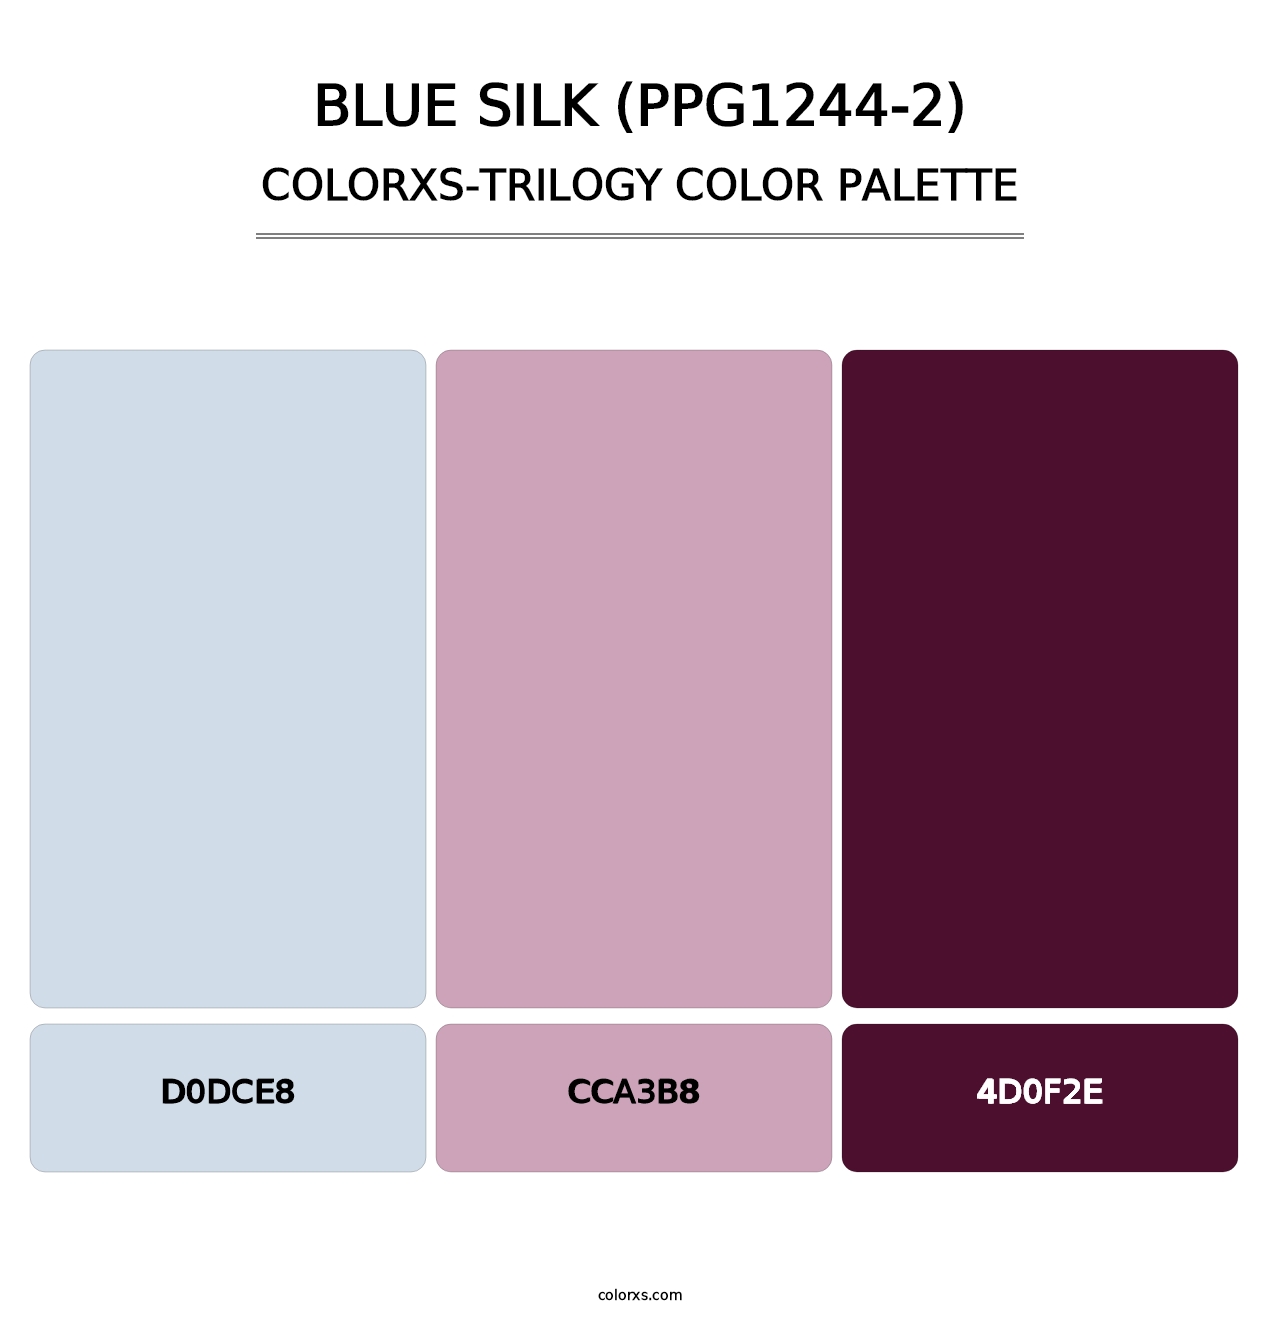 Blue Silk (PPG1244-2) - Colorxs Trilogy Palette